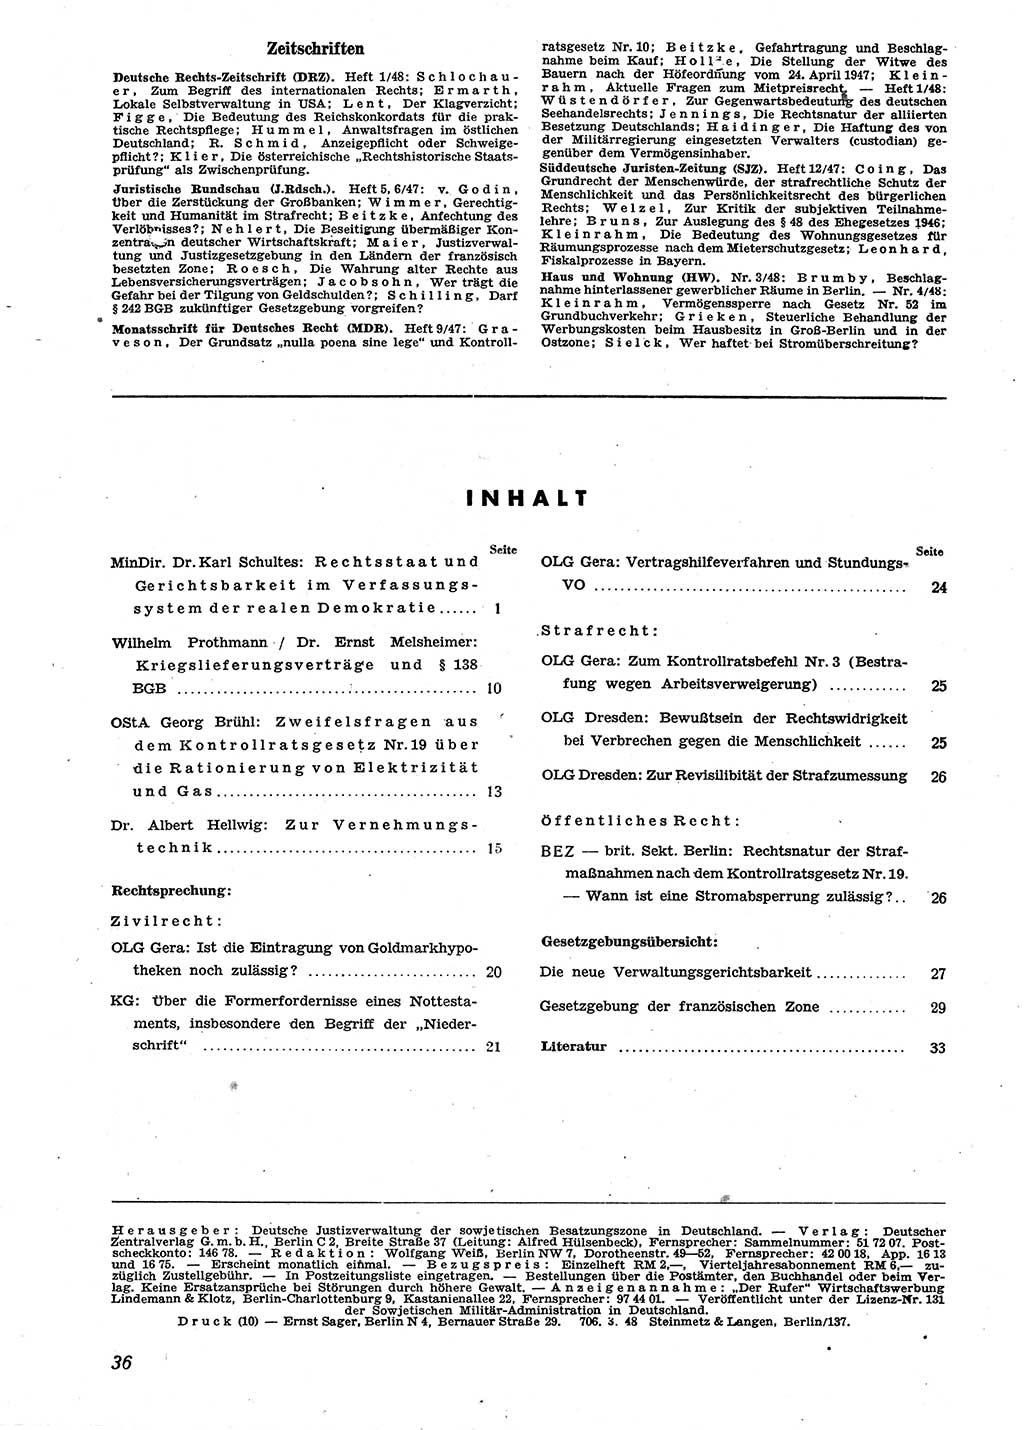 Neue Justiz (NJ), Zeitschrift für Recht und Rechtswissenschaft [Sowjetische Besatzungszone (SBZ) Deutschland], 2. Jahrgang 1948, Seite 36 (NJ SBZ Dtl. 1948, S. 36)